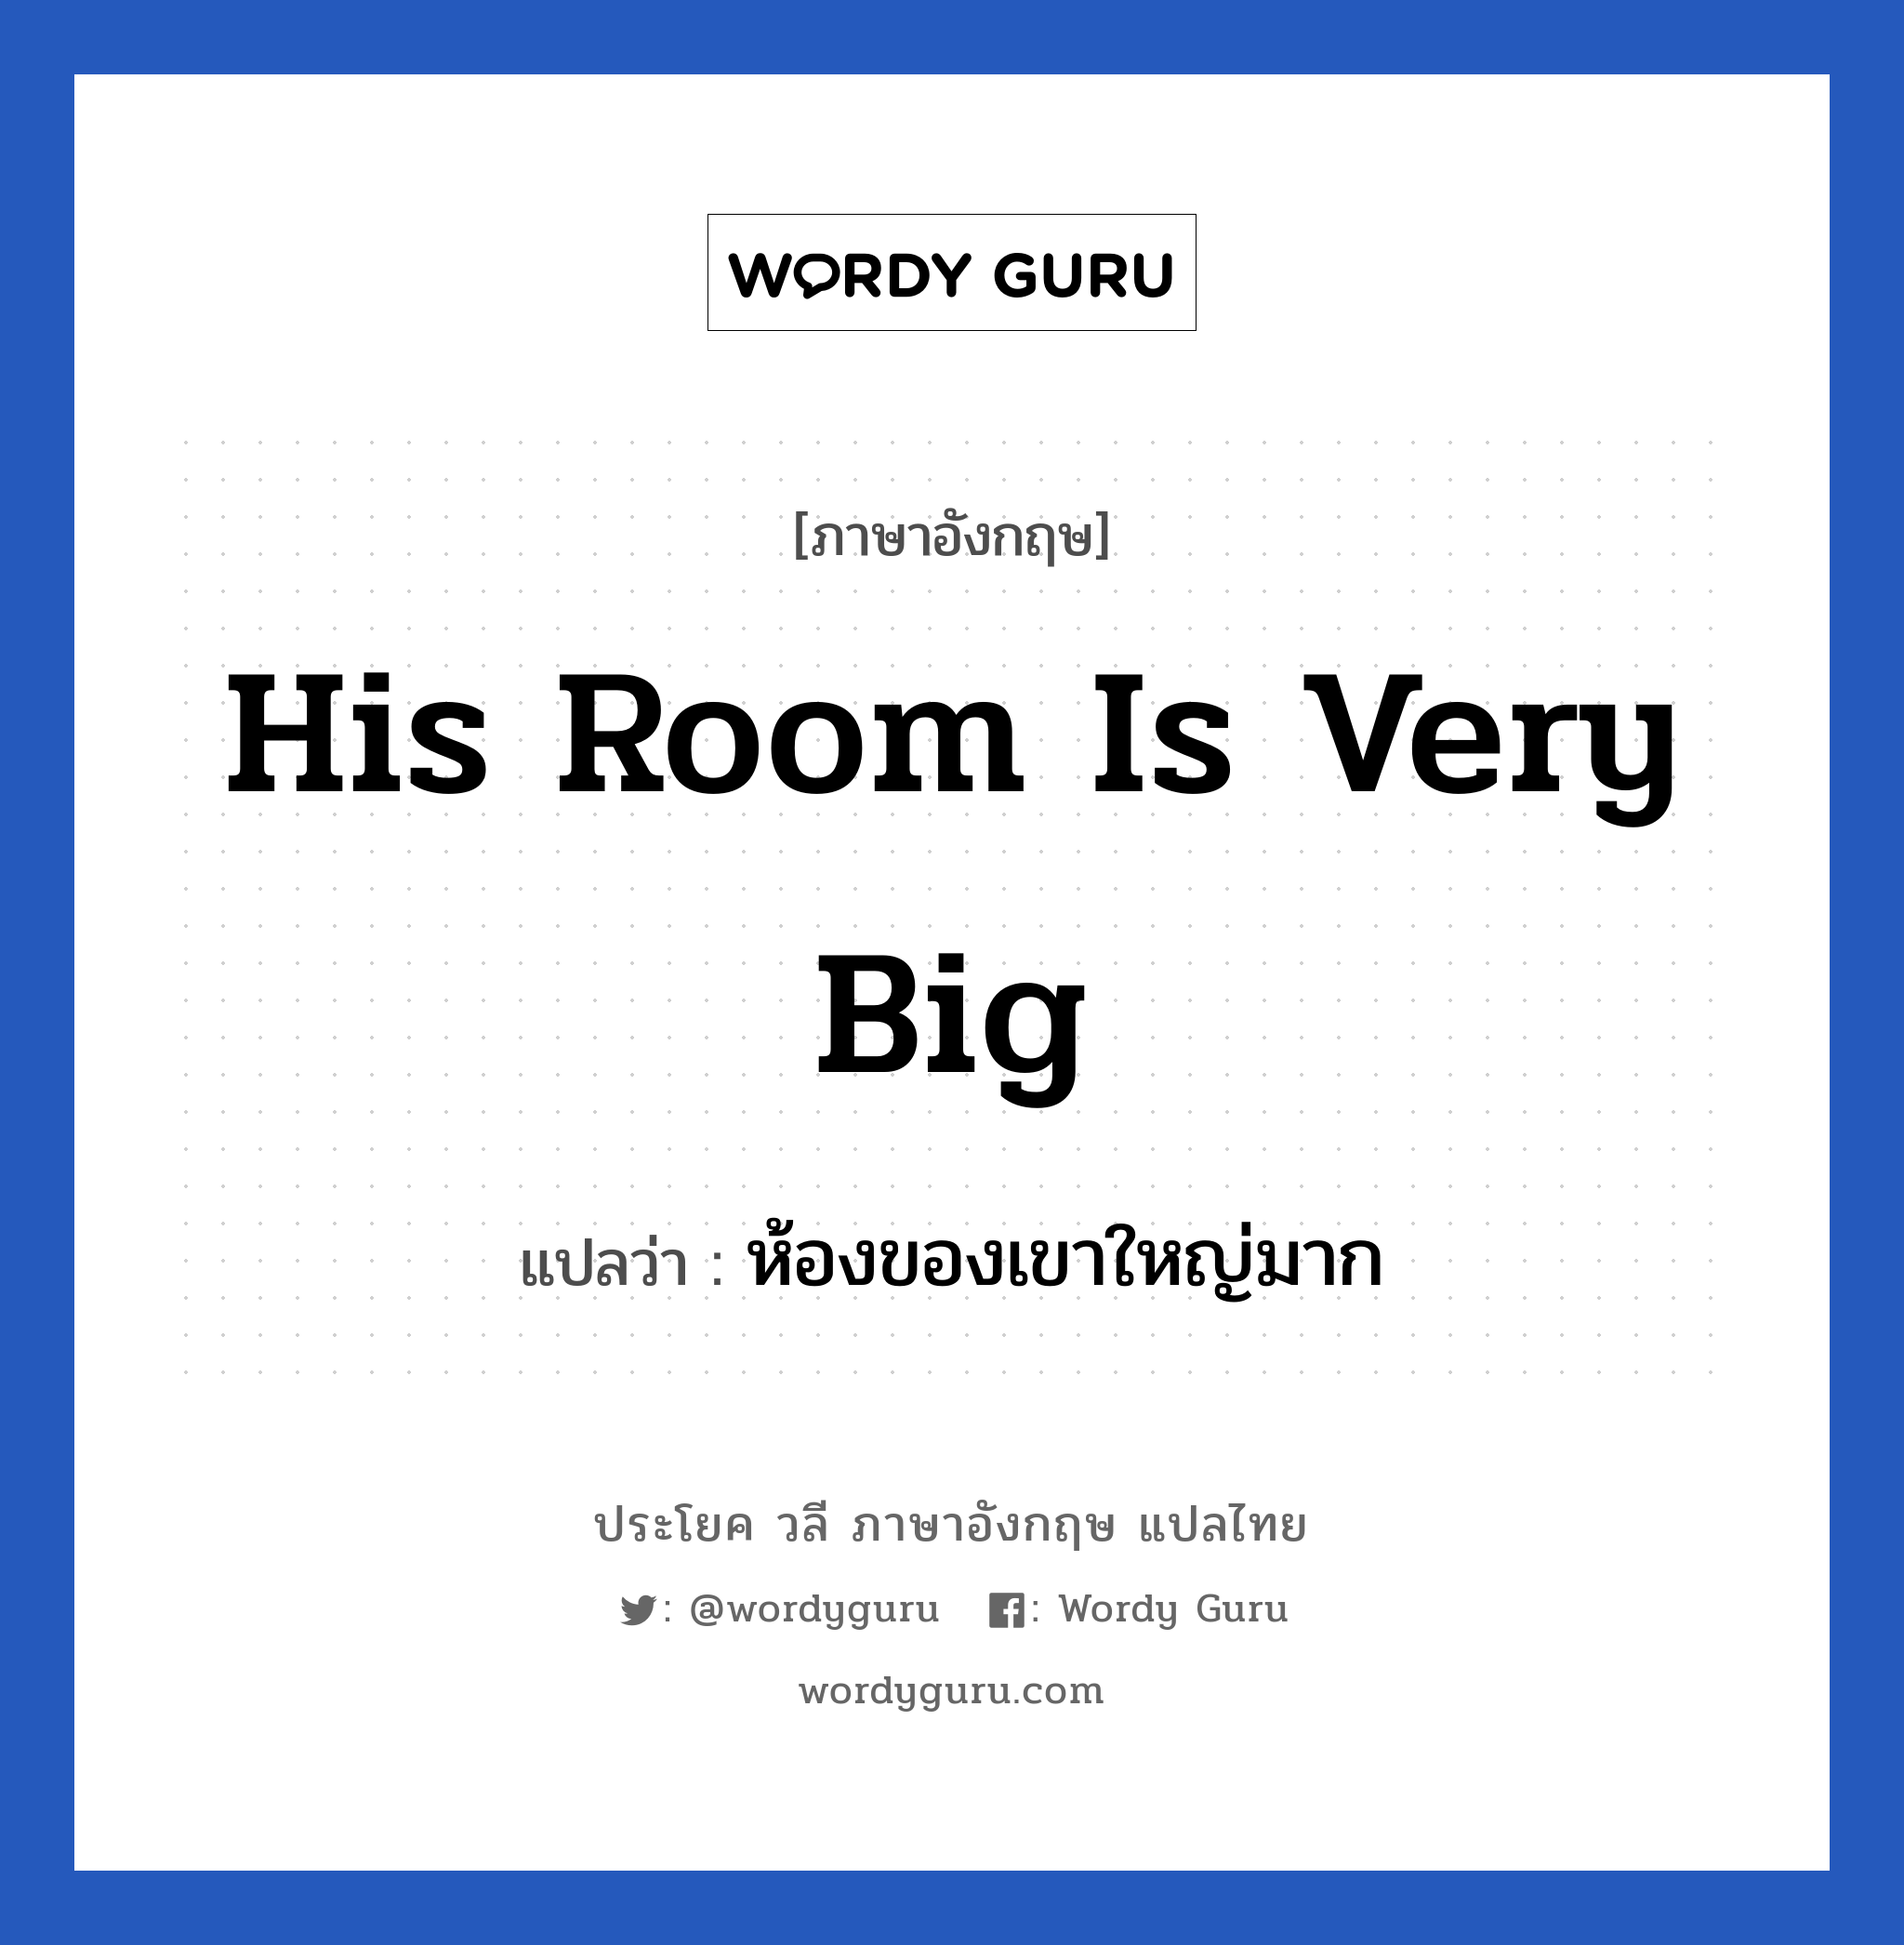 ห้องของเขาใหญ่มาก ภาษาอังกฤษ?, วลีภาษาอังกฤษ ห้องของเขาใหญ่มาก แปลว่า His room is very big